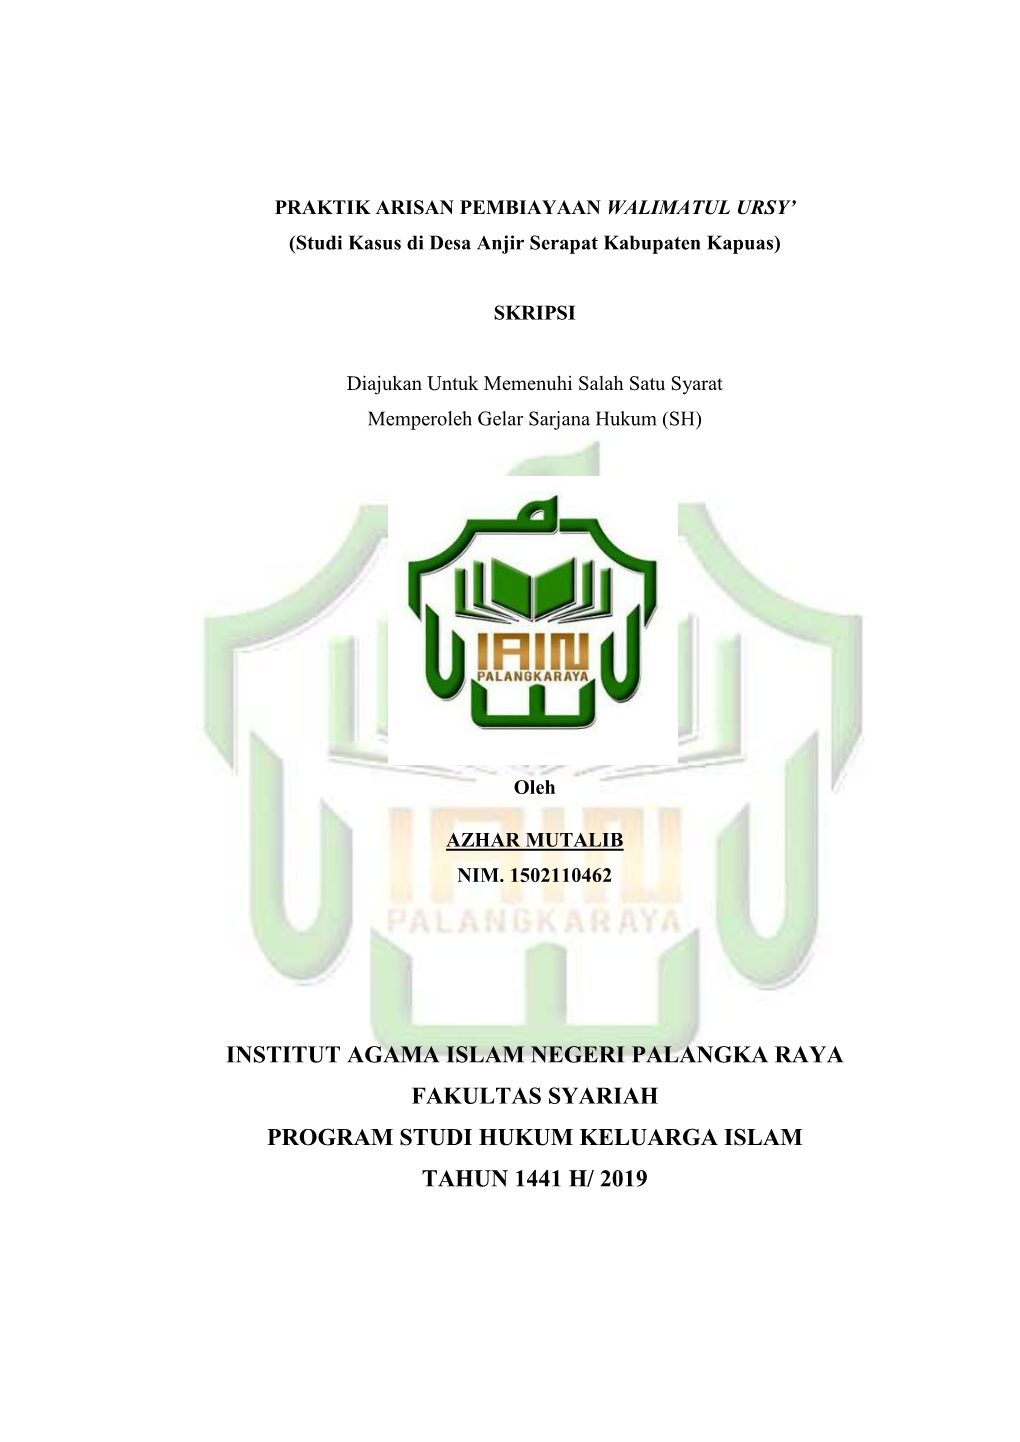 Institut Agama Islam Negeri Palangka Raya Fakultas Syariah Program Studi Hukum Keluarga Islam Tahun 1441 H/ 2019